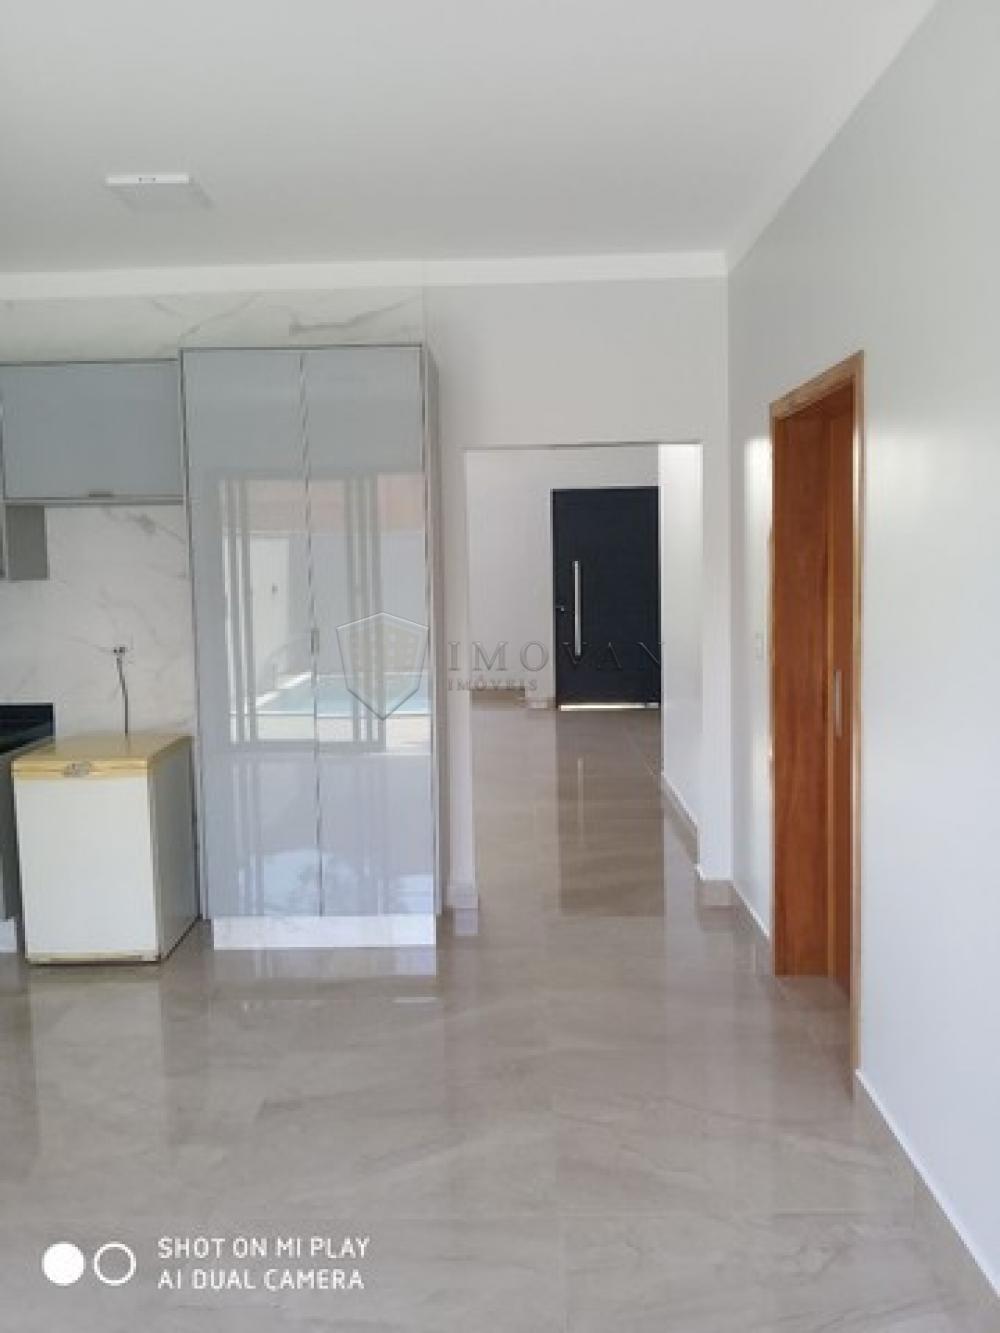 Comprar Casa / Condomínio em Bonfim Paulista R$ 932.000,00 - Foto 9